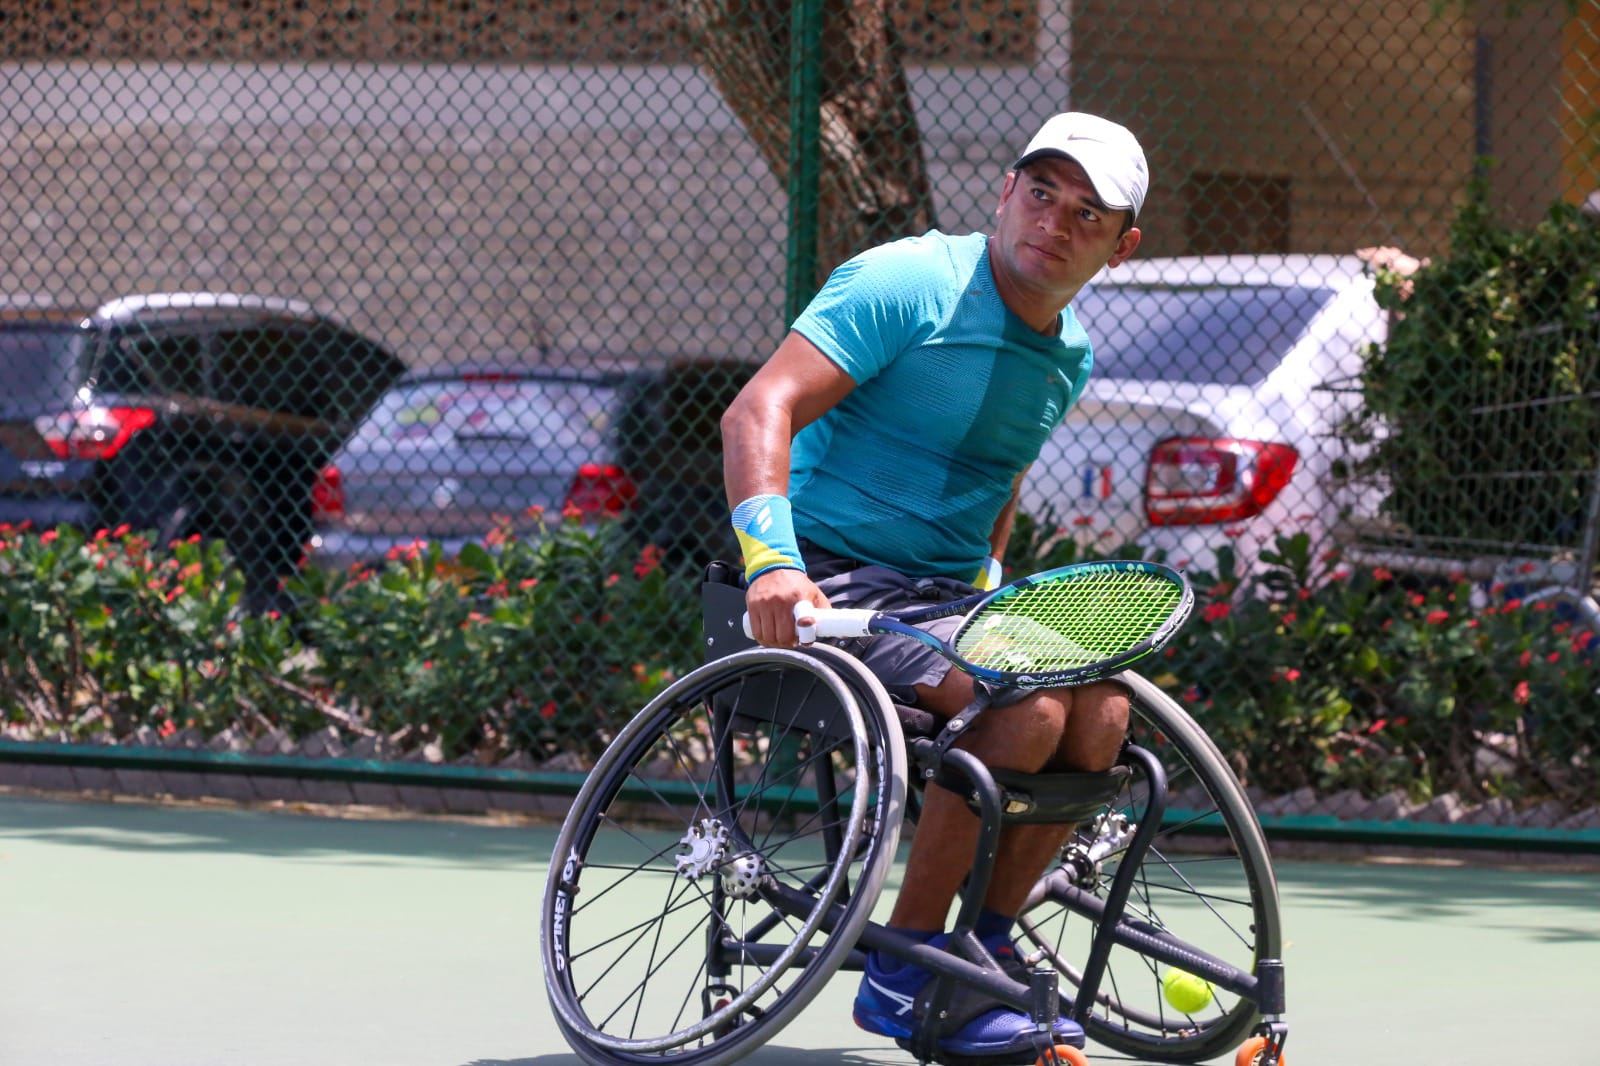 décimo tercera edición del torneo ITF Barranquilla Open tenis en silla de ruedas